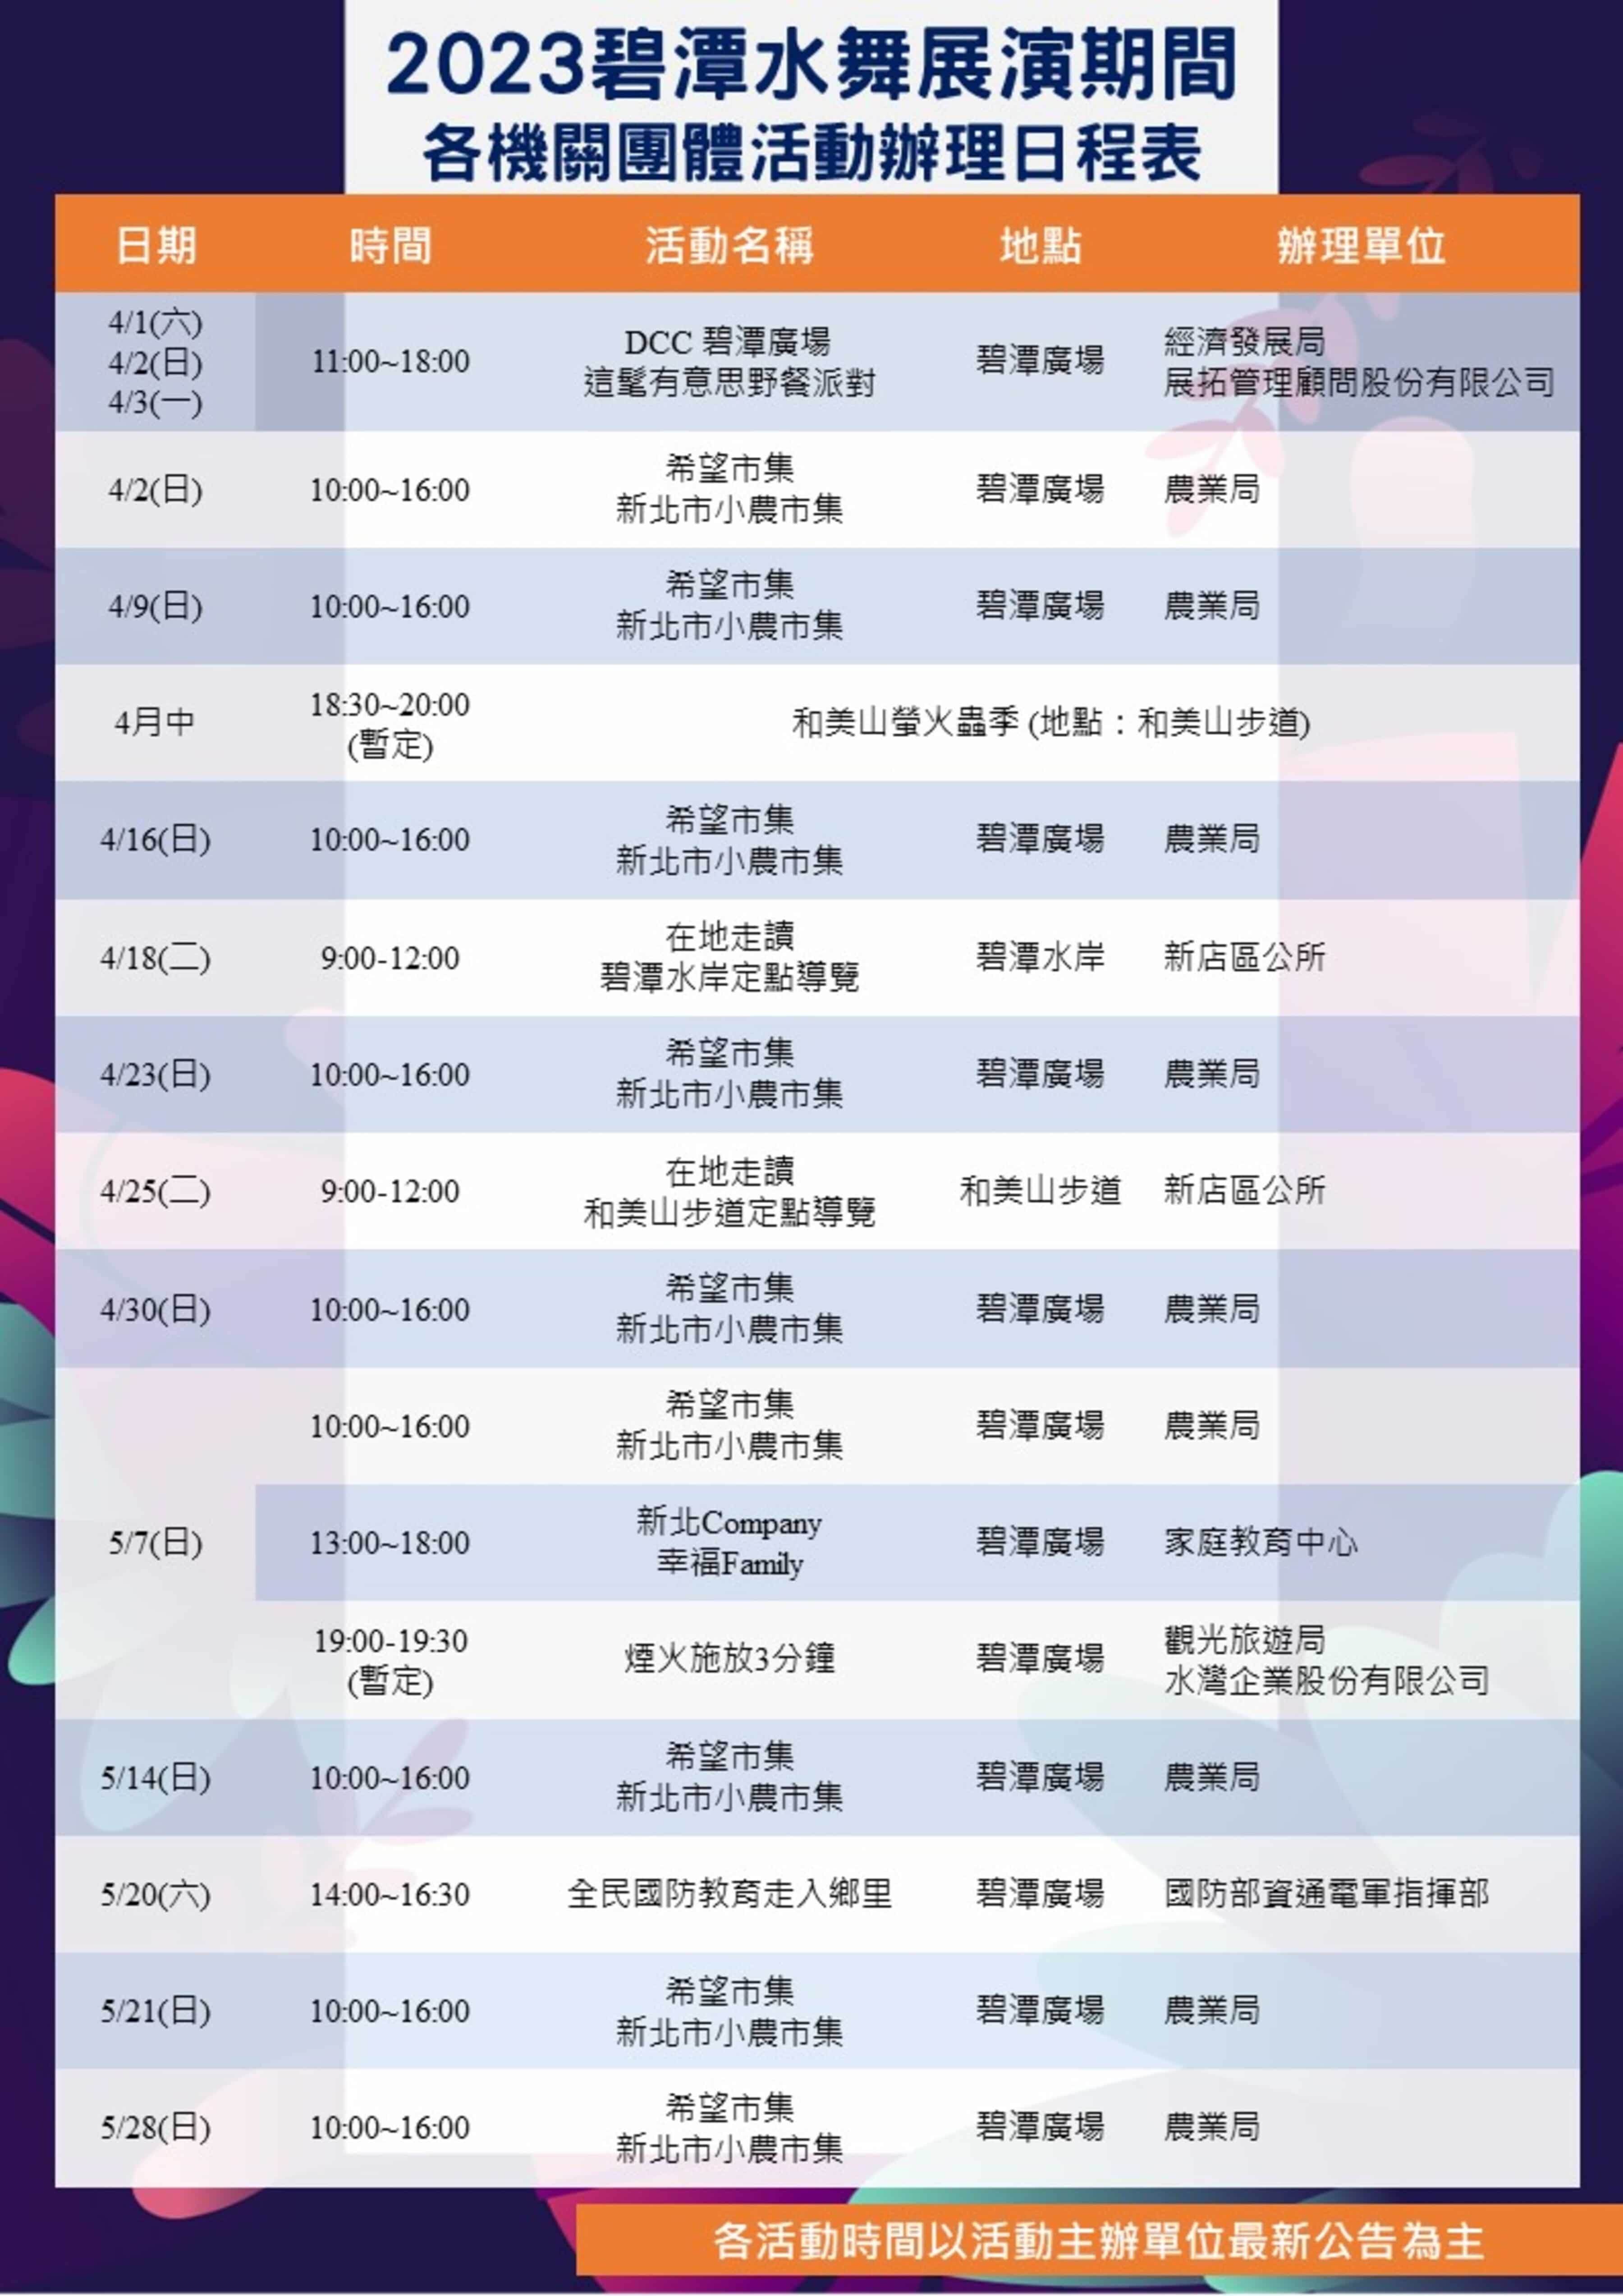 2023碧潭水舞展演期間各機關團體活動辦理日程表